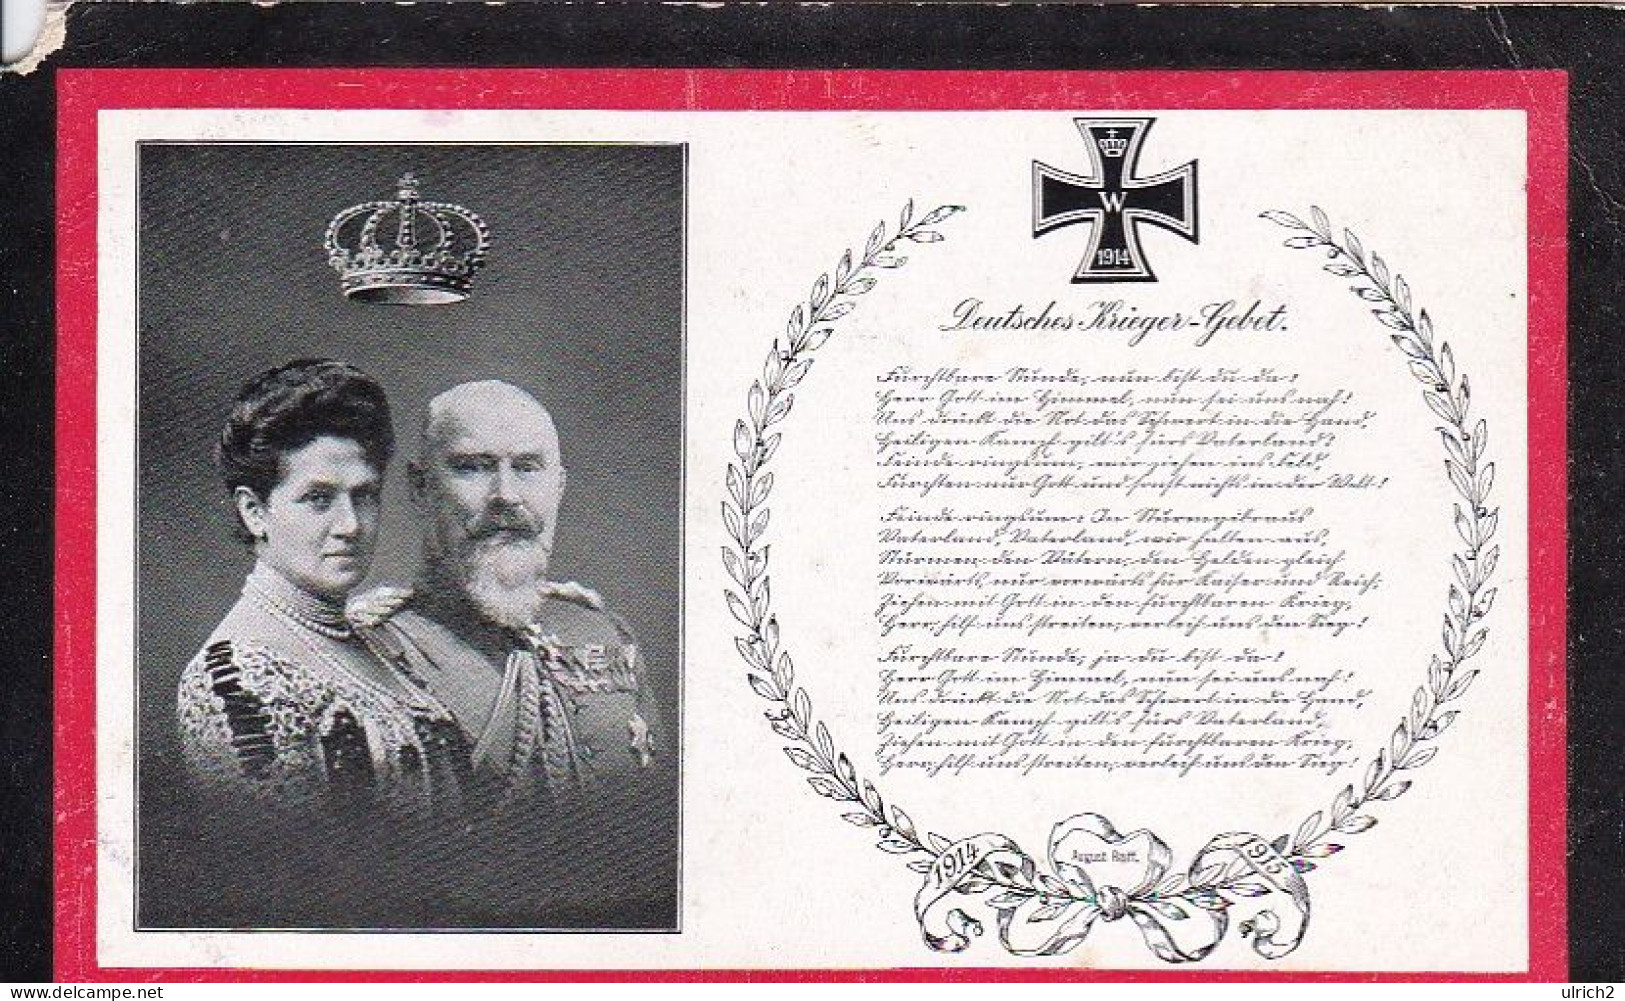 AK König Wilhelm II Von Württemberg Und Charlotte - Deutsches Krieger-Gebet - Ca. 1915 (69414) - Royal Families